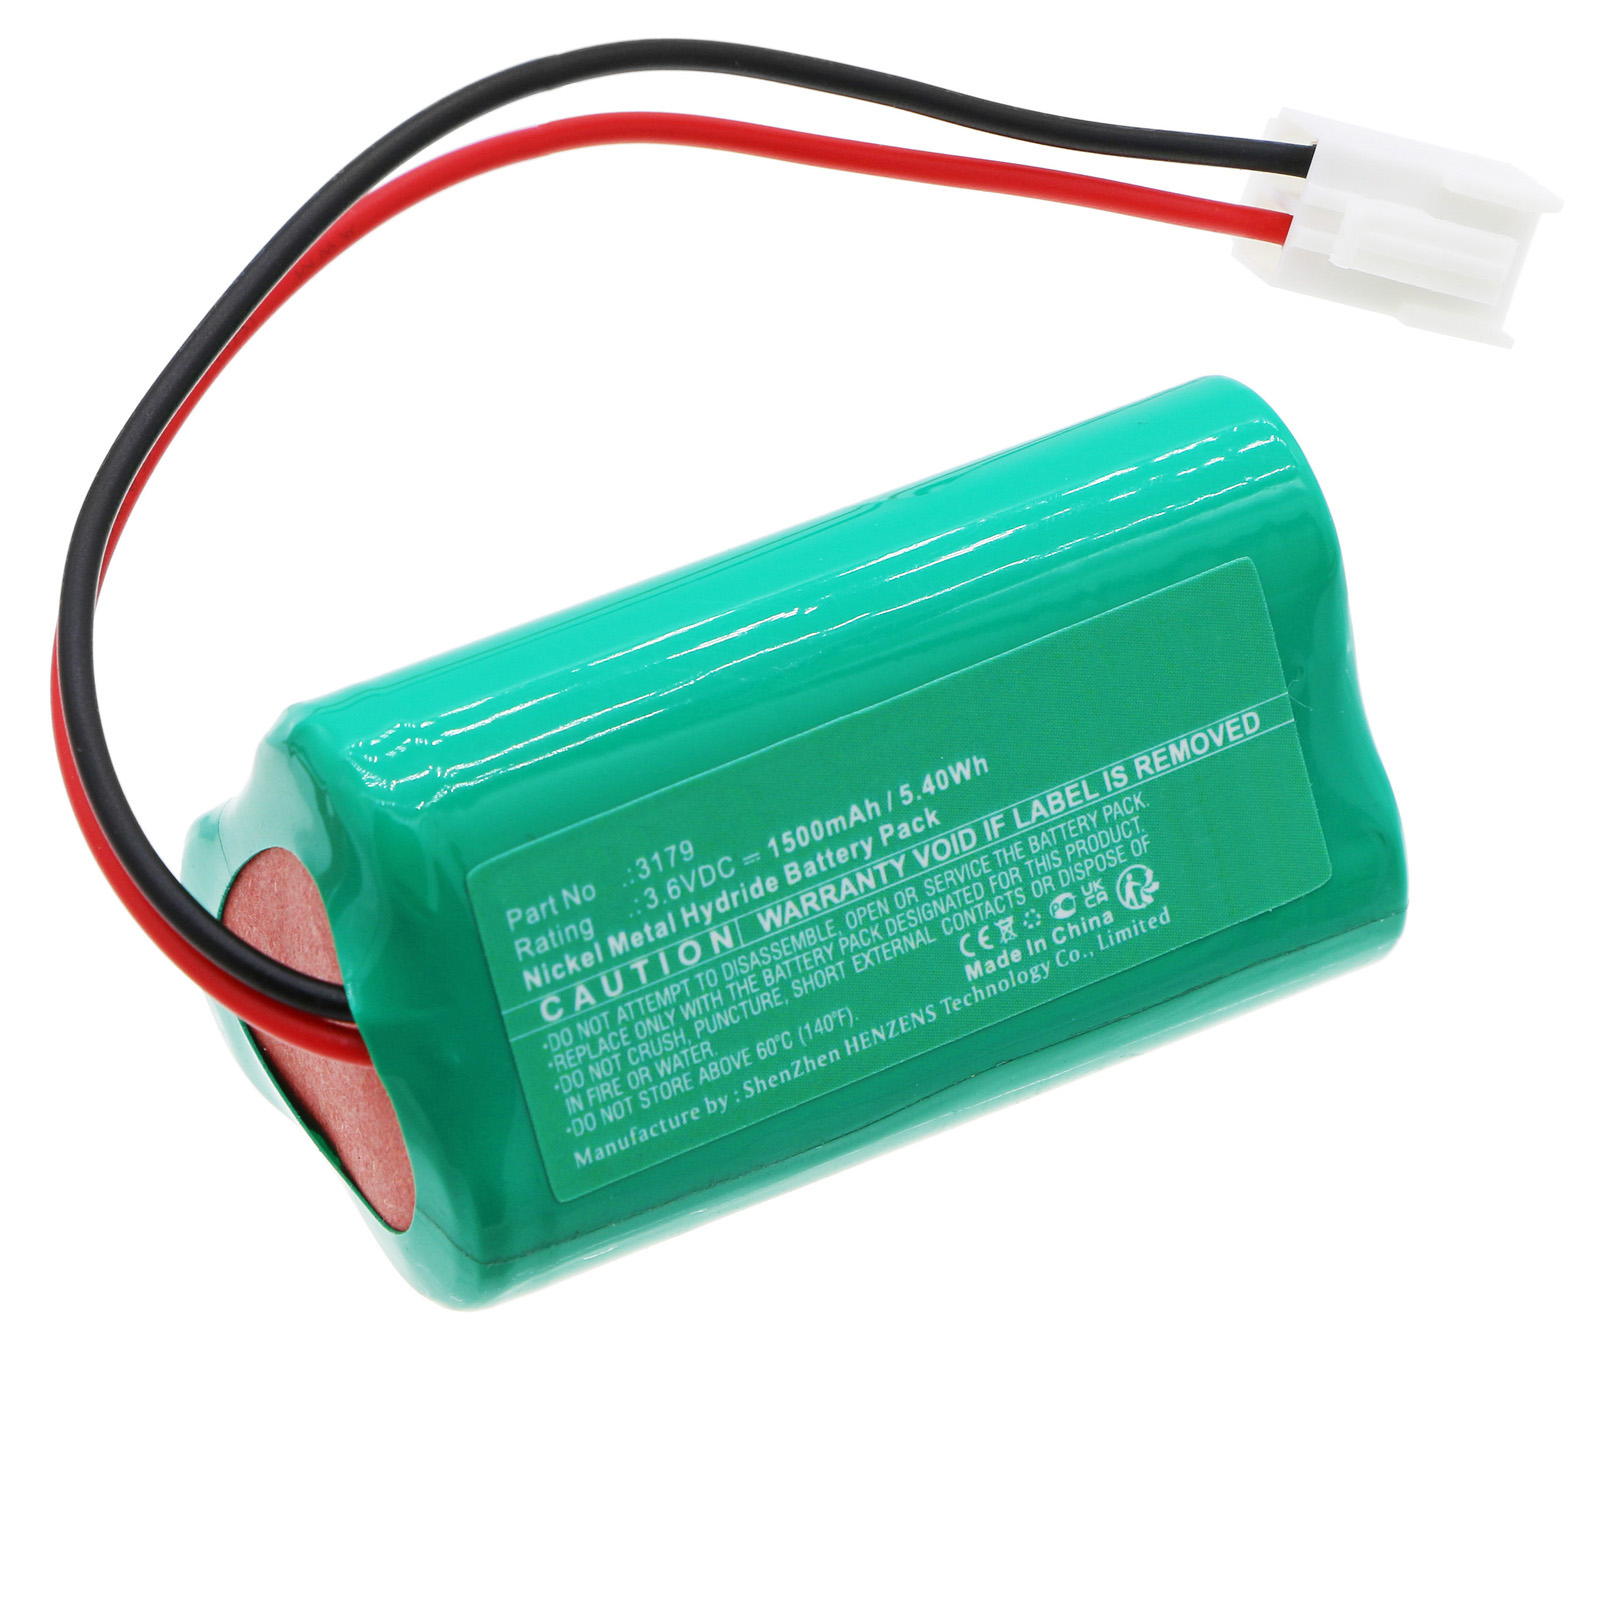 Batteries for DOTLUXEmergency Lighting